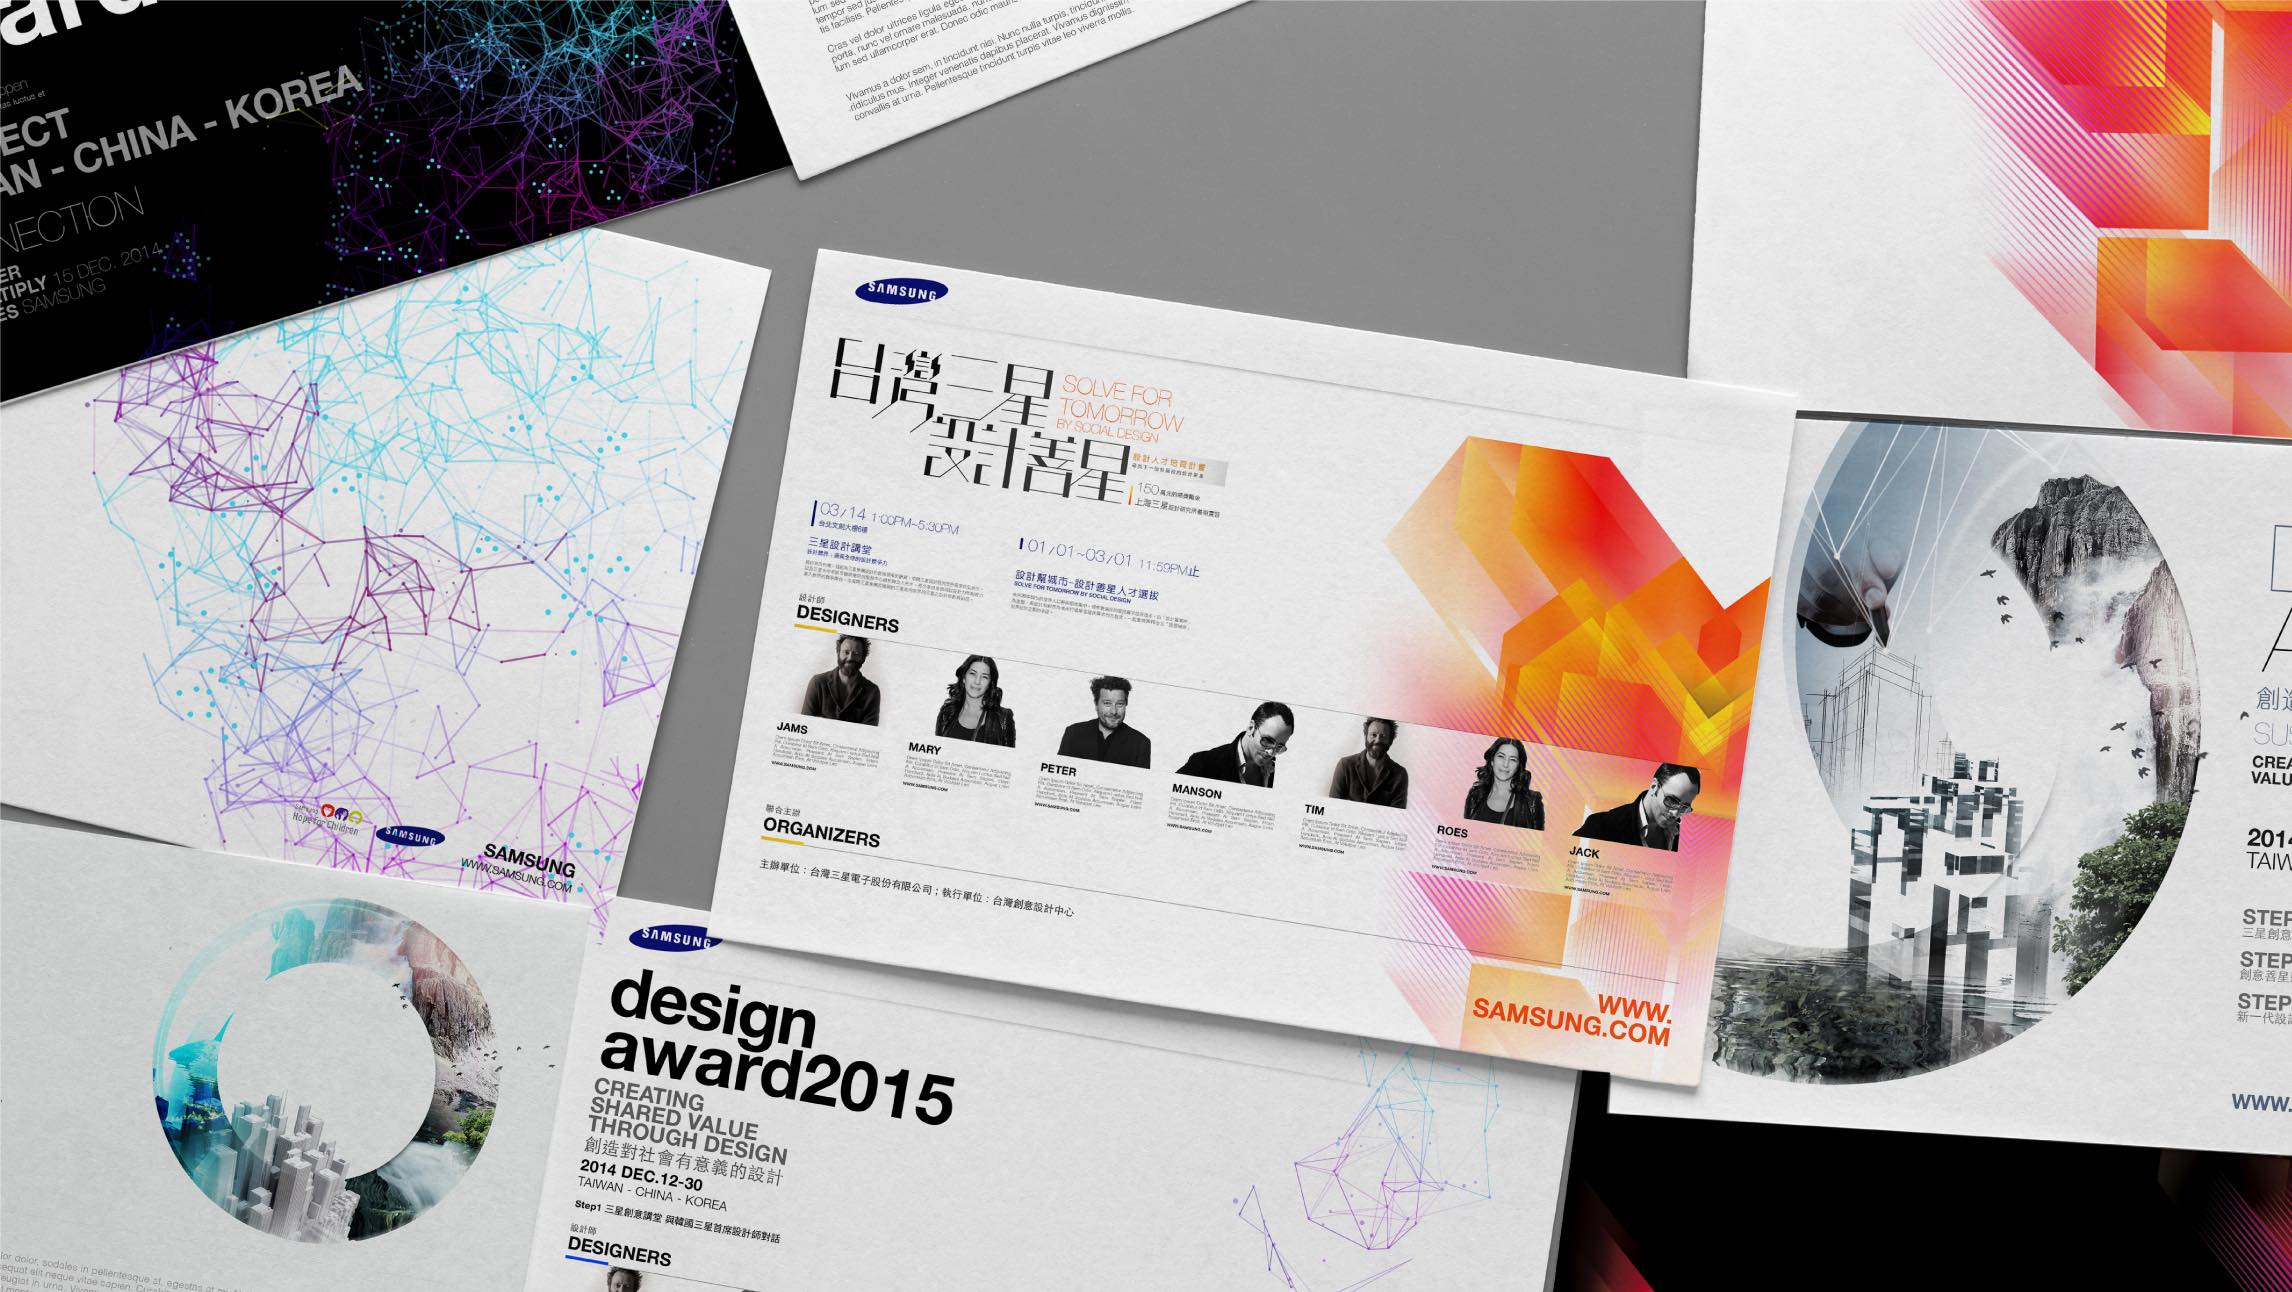 vocuis samsung brand design–2292px 10 2015